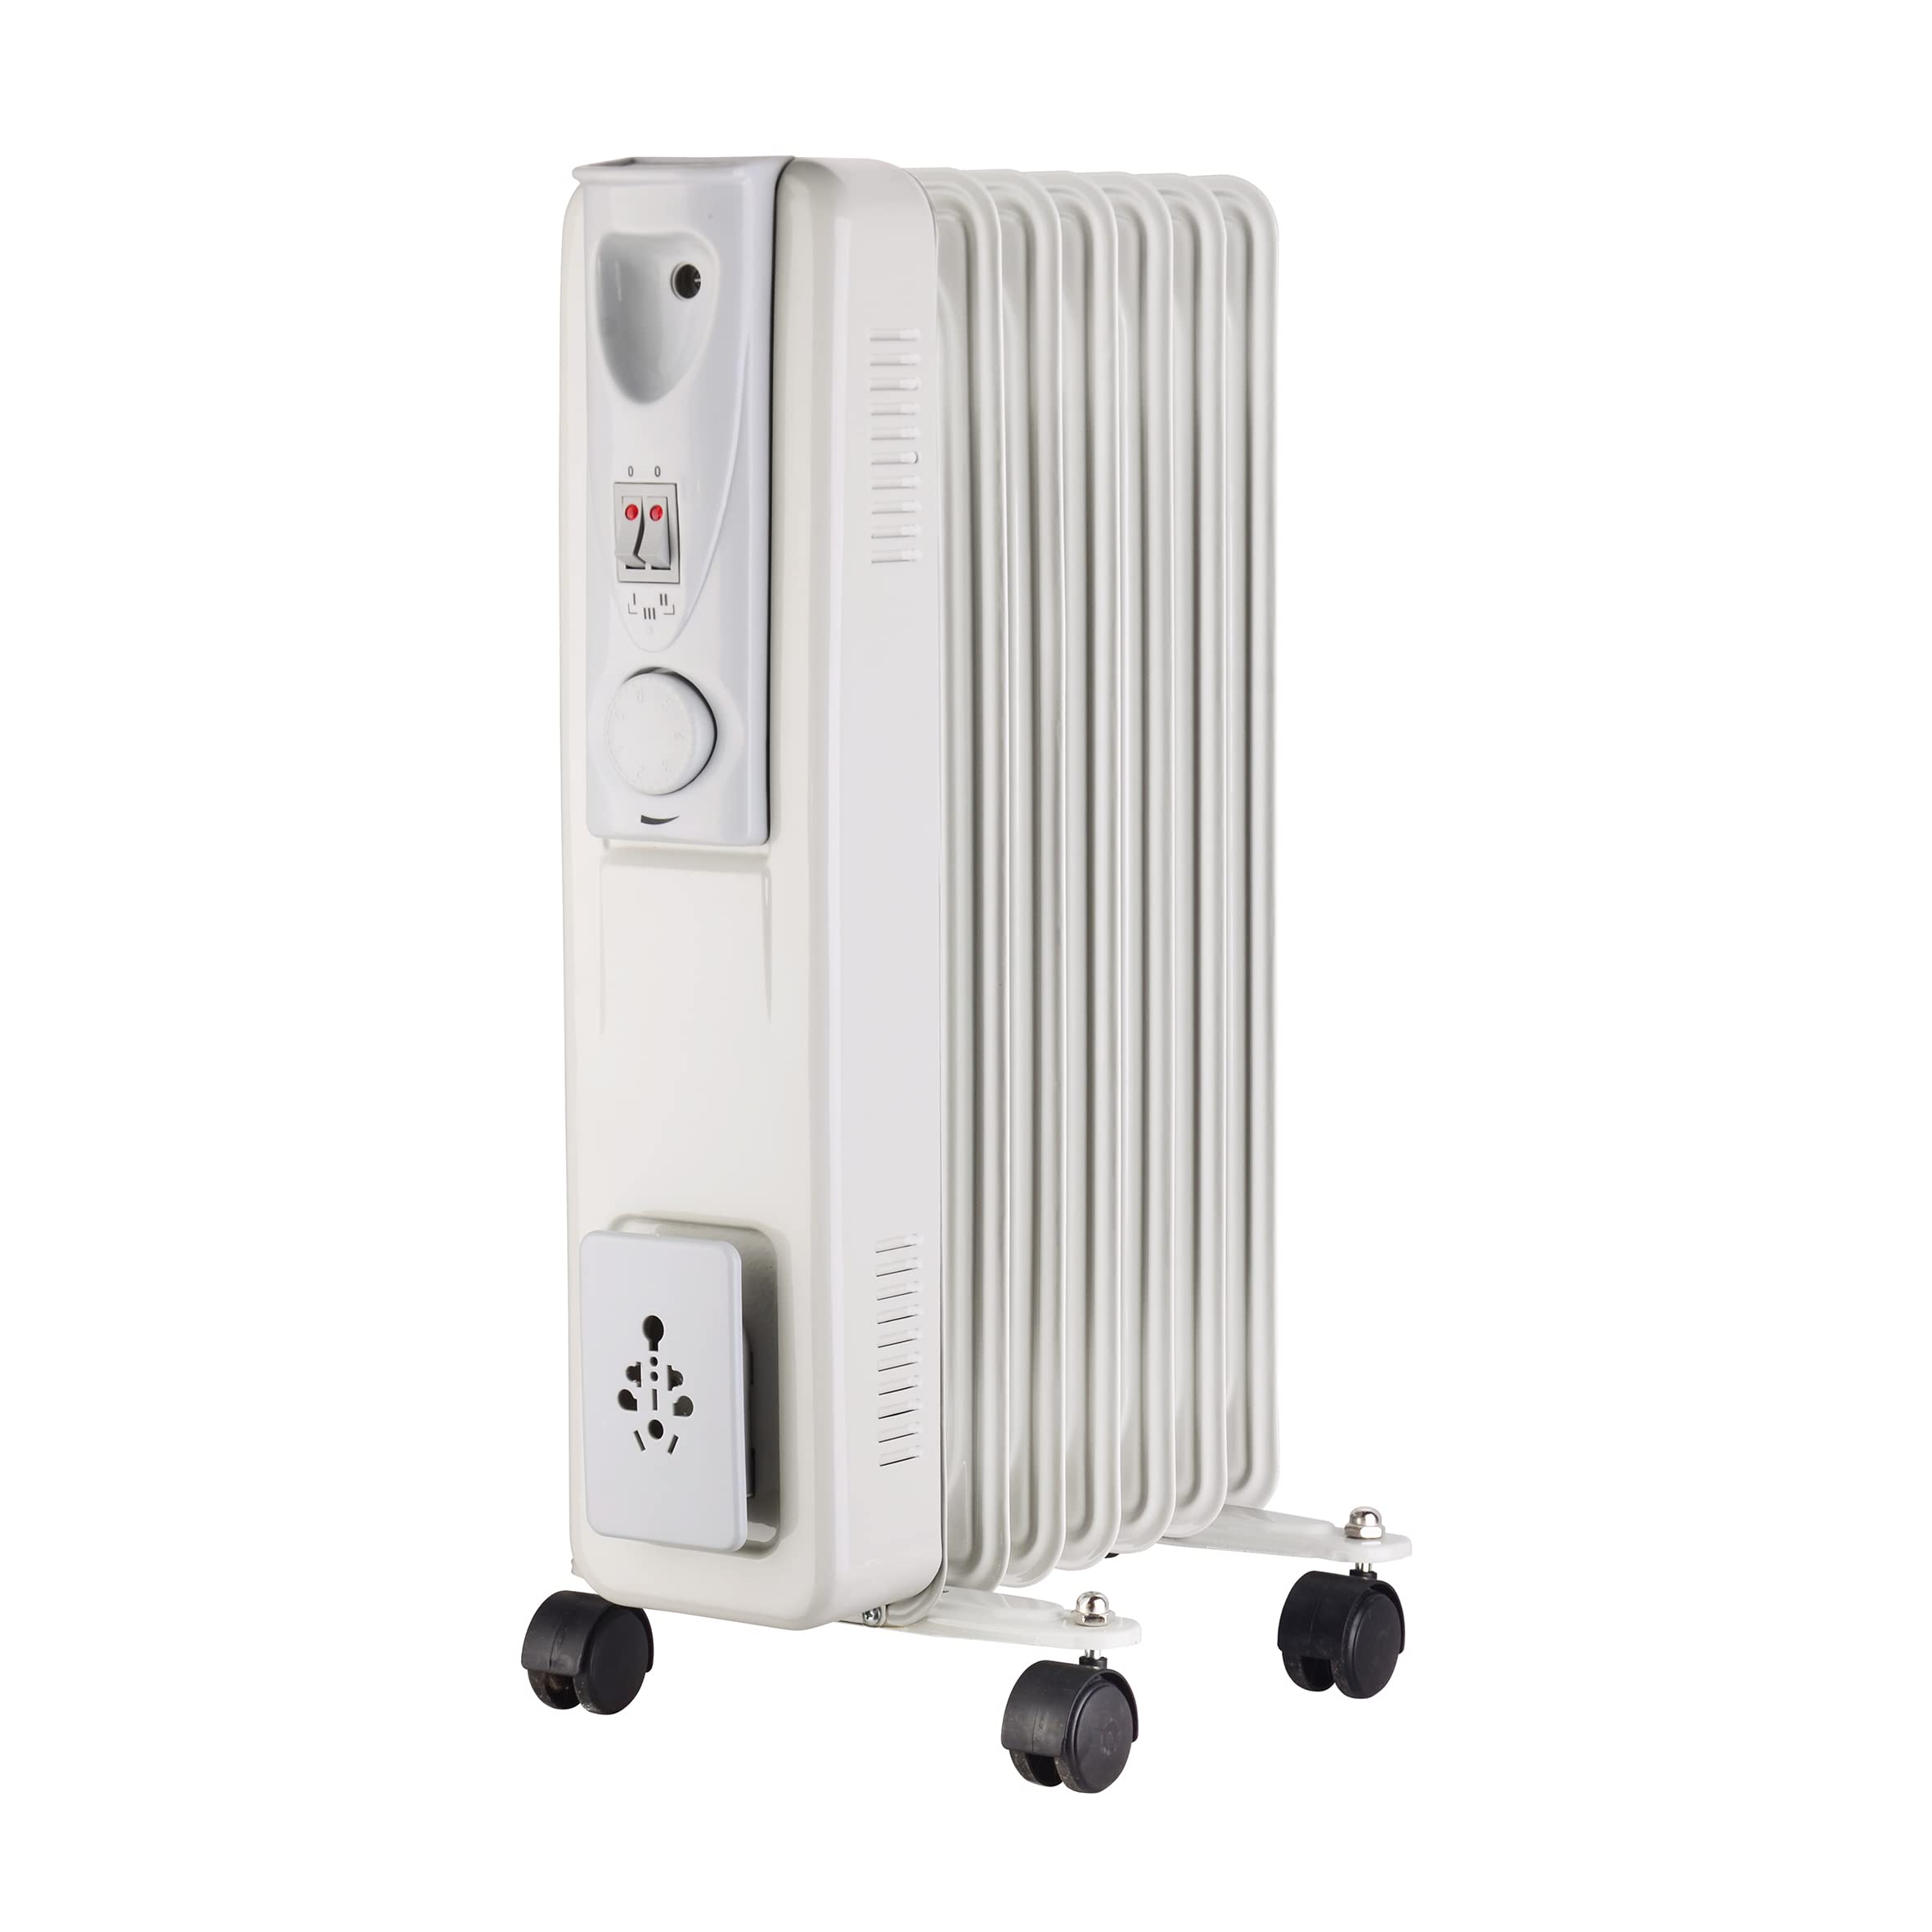 MaxxHome Elektrischer Ölradiator - Thermostat - Heizkörper Elektrisch - 4 Heizstufen - Überhitzungsschutz - 7 Lamellen - 1500W [Energieklasse A+++]